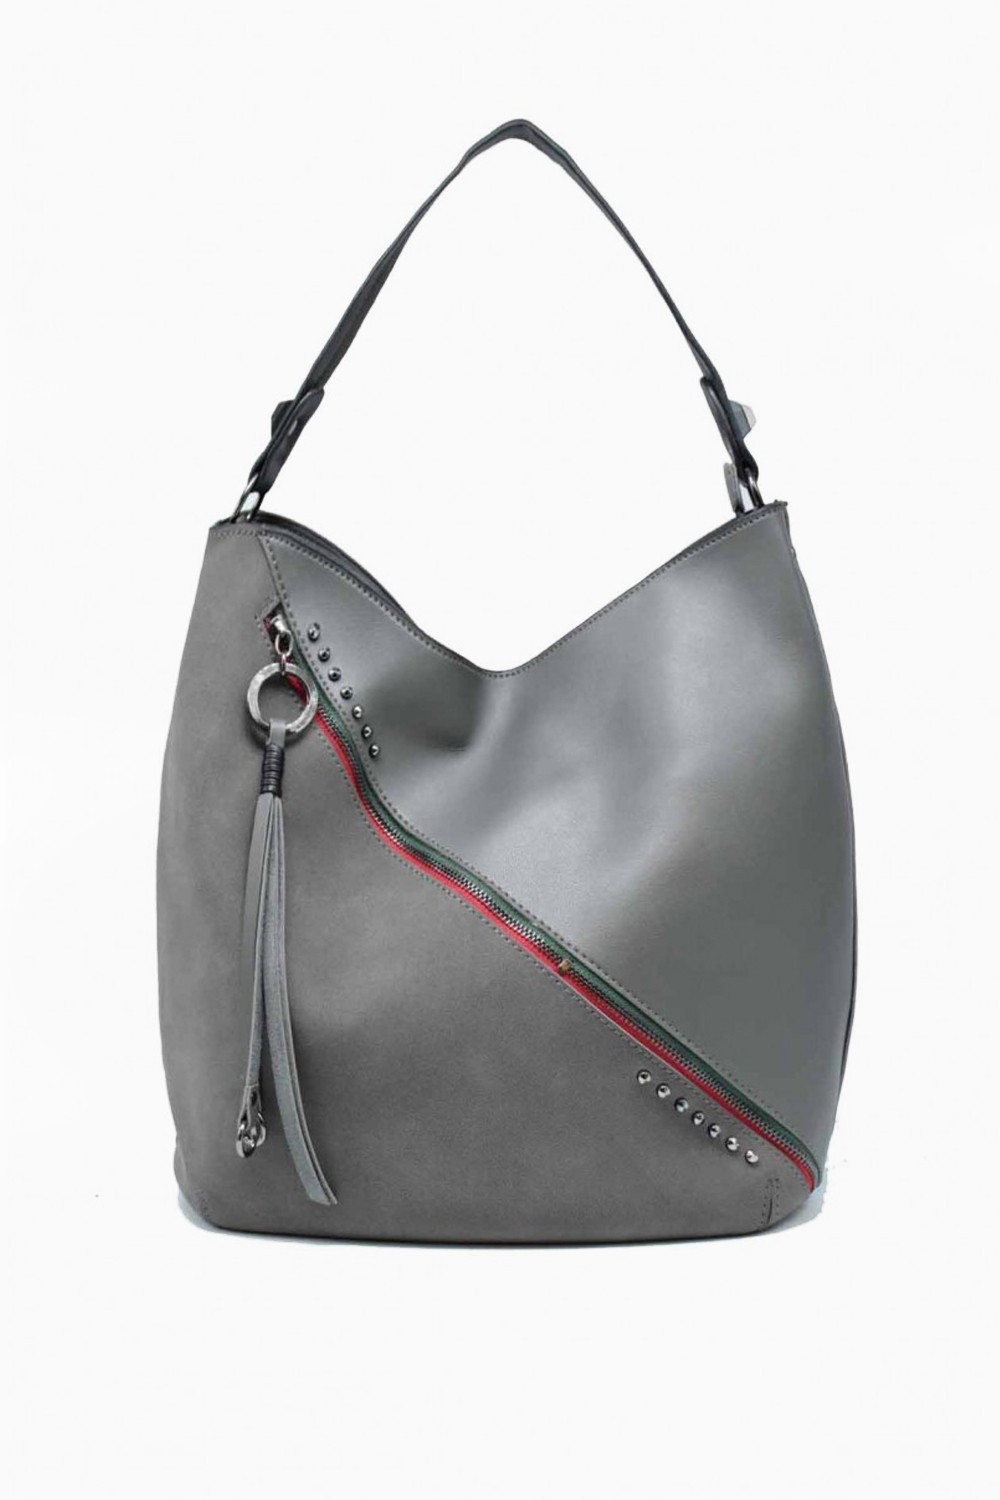 Tom & Eva Kenni Leather Effect Boho in Grey | iCLOTHING